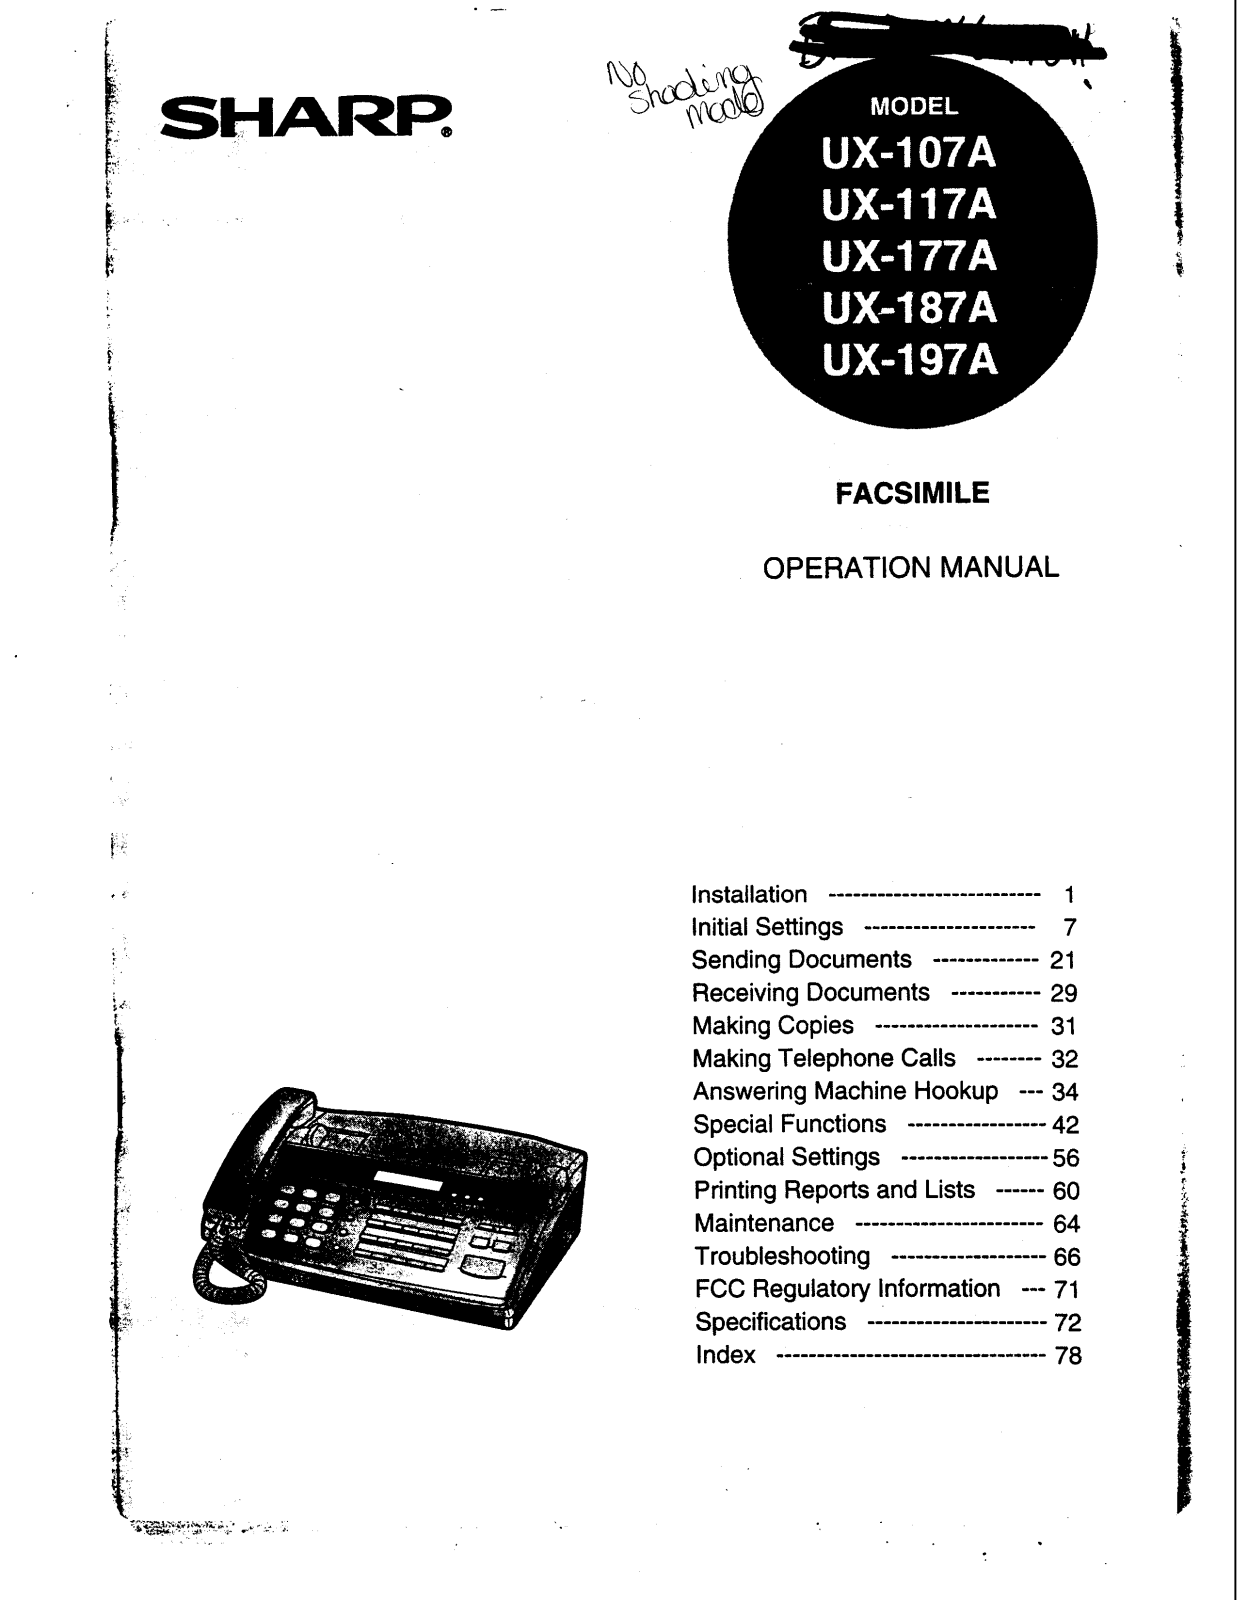 Sharp UX-107A, UX-187A, UX-197A, UX-177A Manual